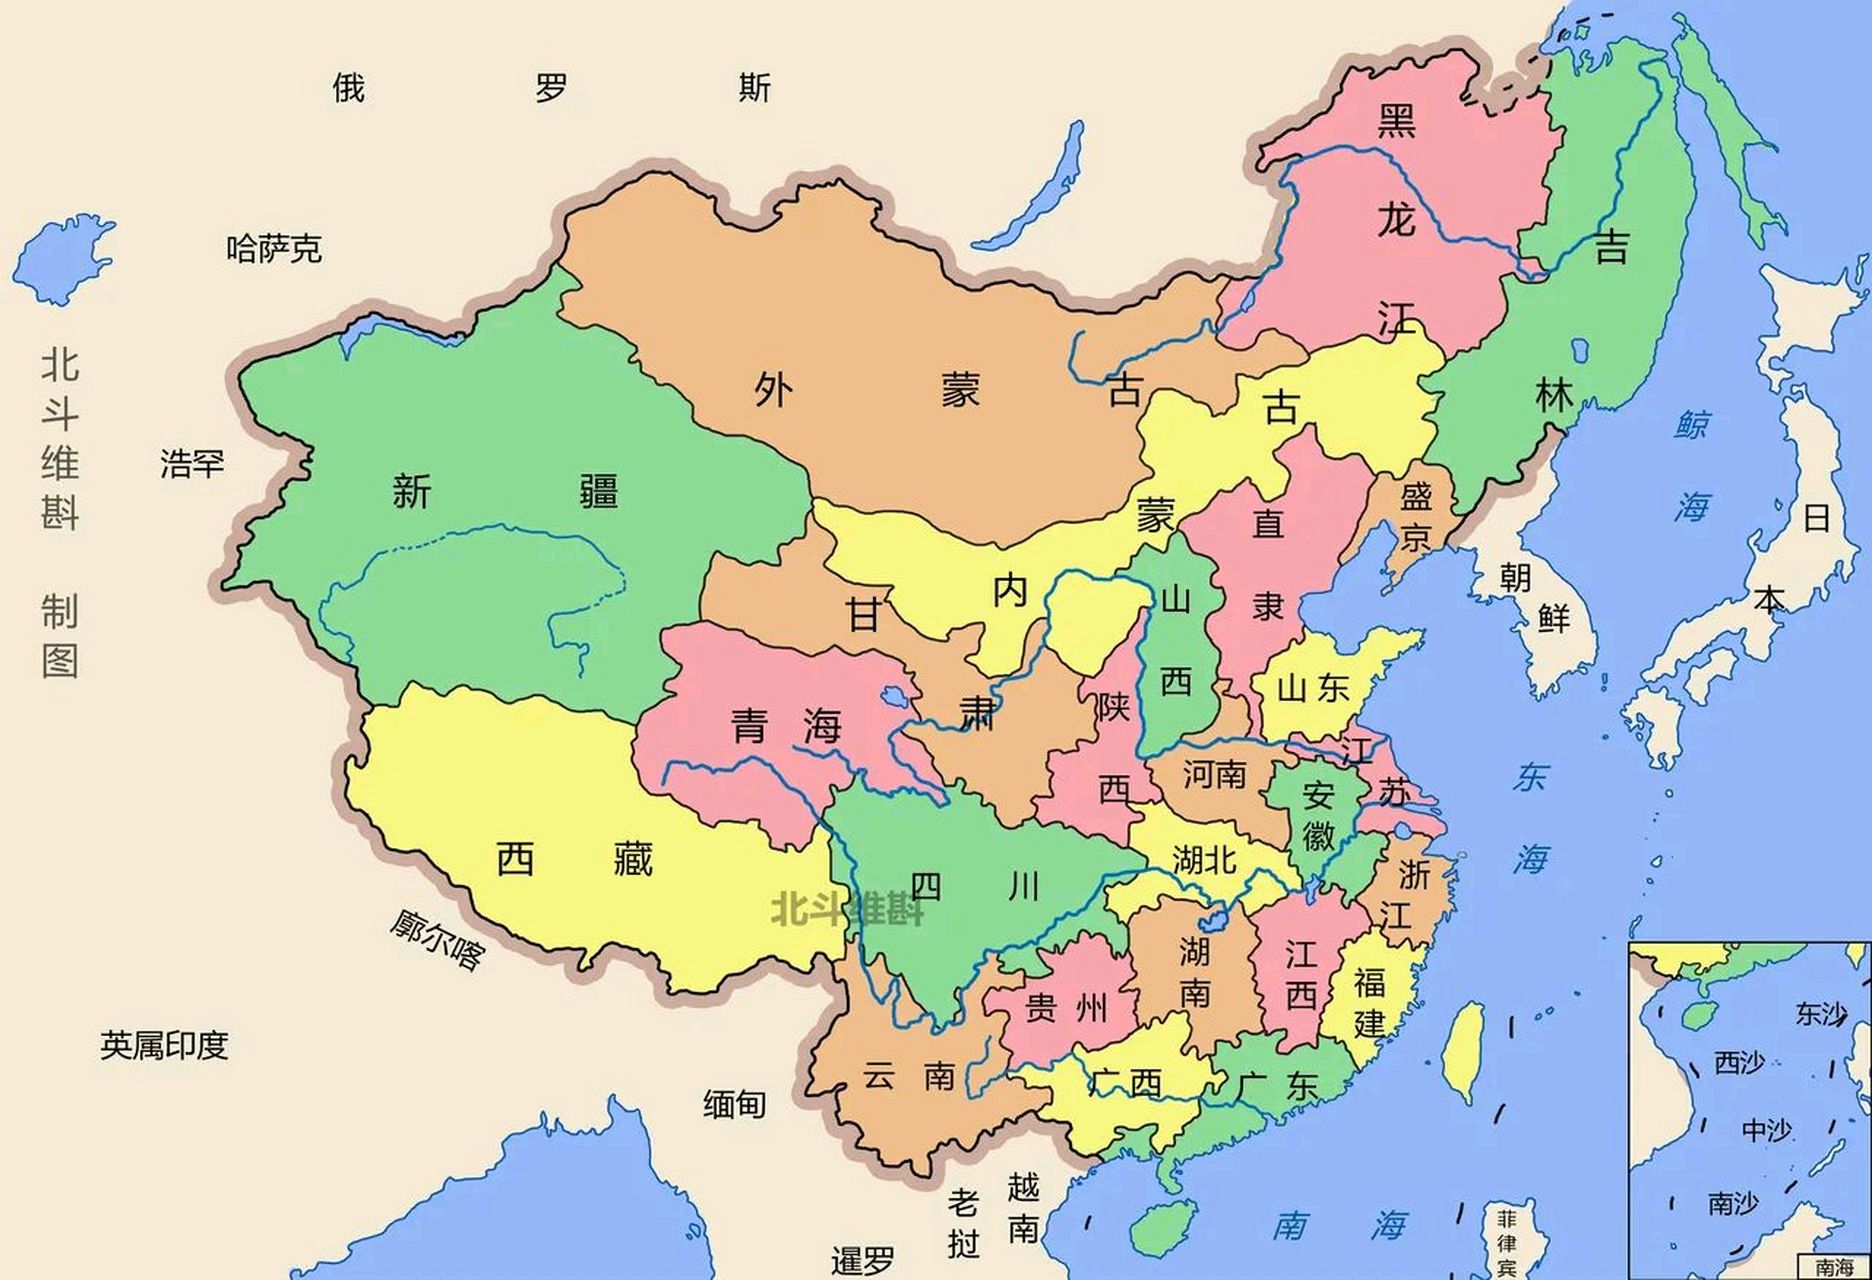 清朝分省地图 省份划分和现在基本相同.主要区别 外蒙古是一个辖区.